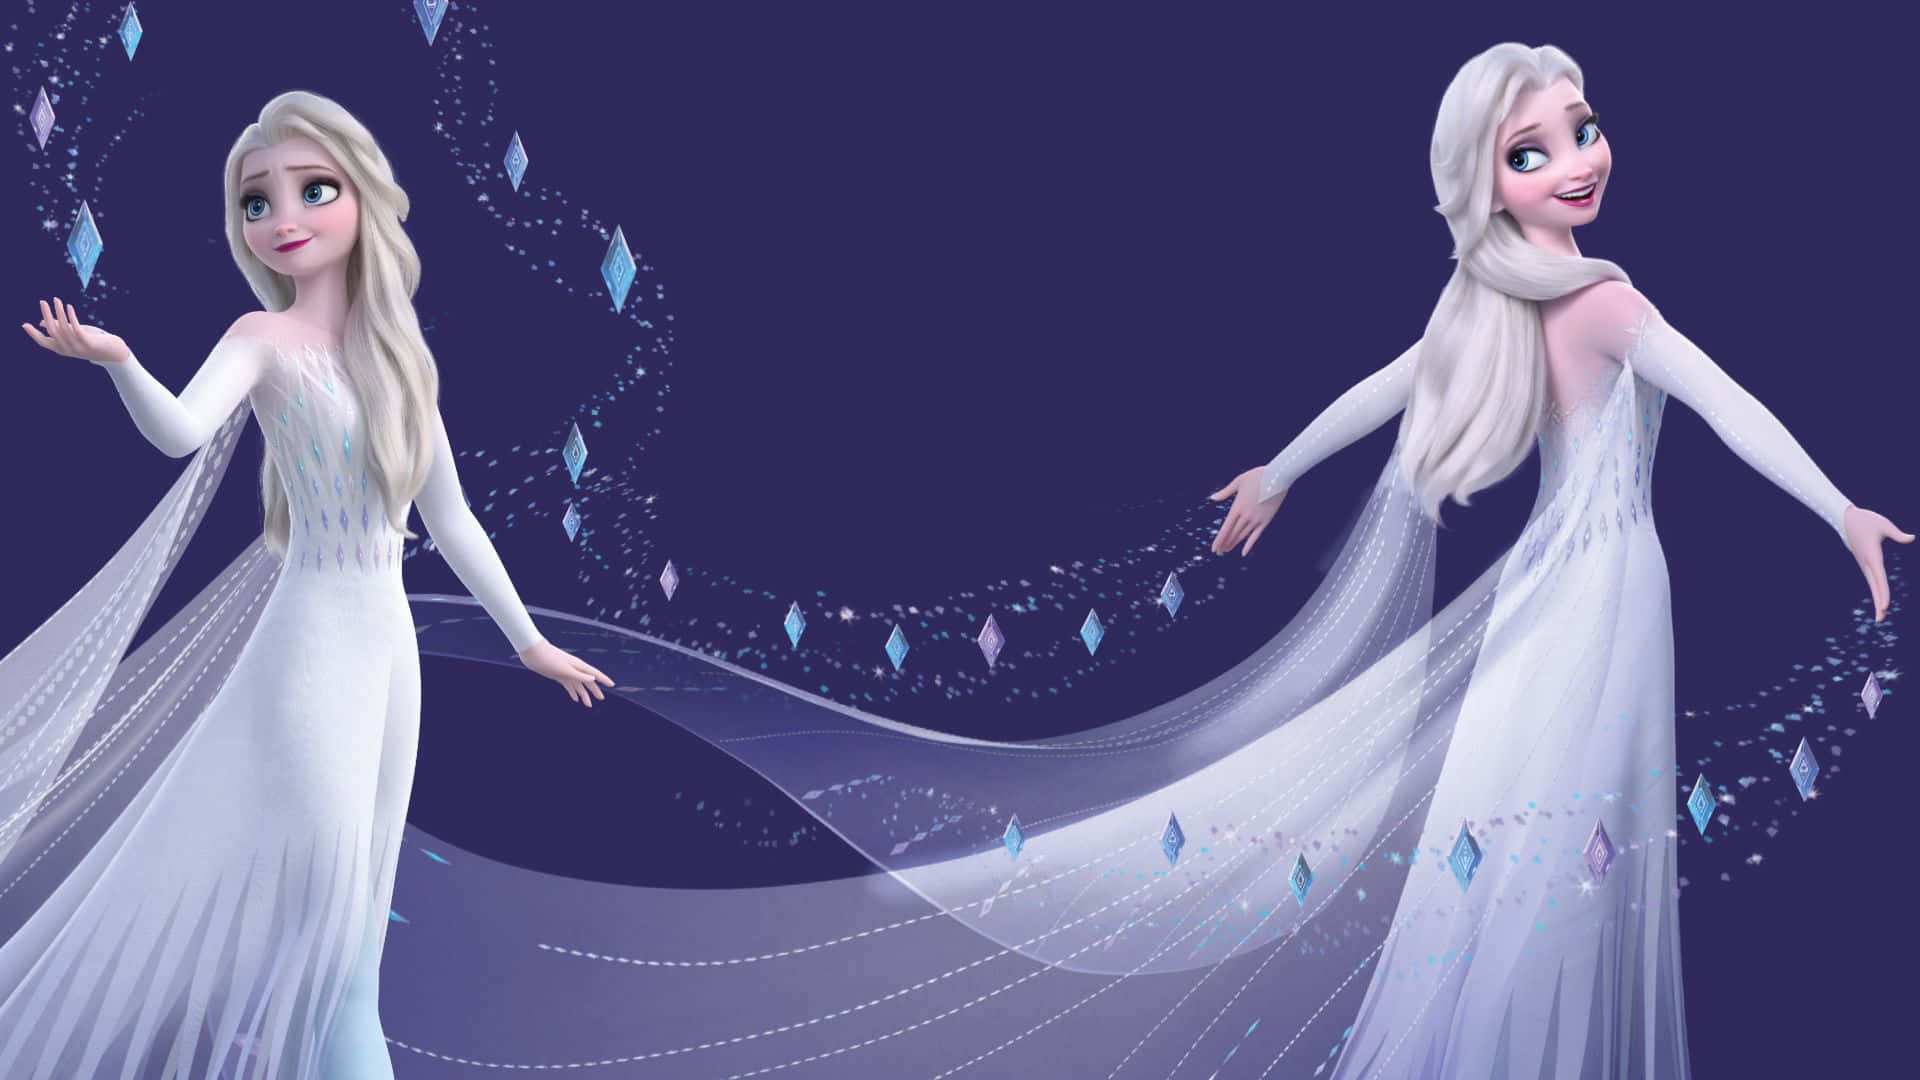 Lady Elsa in her Snowy White Dress from Disney's Frozen 2 Wallpaper